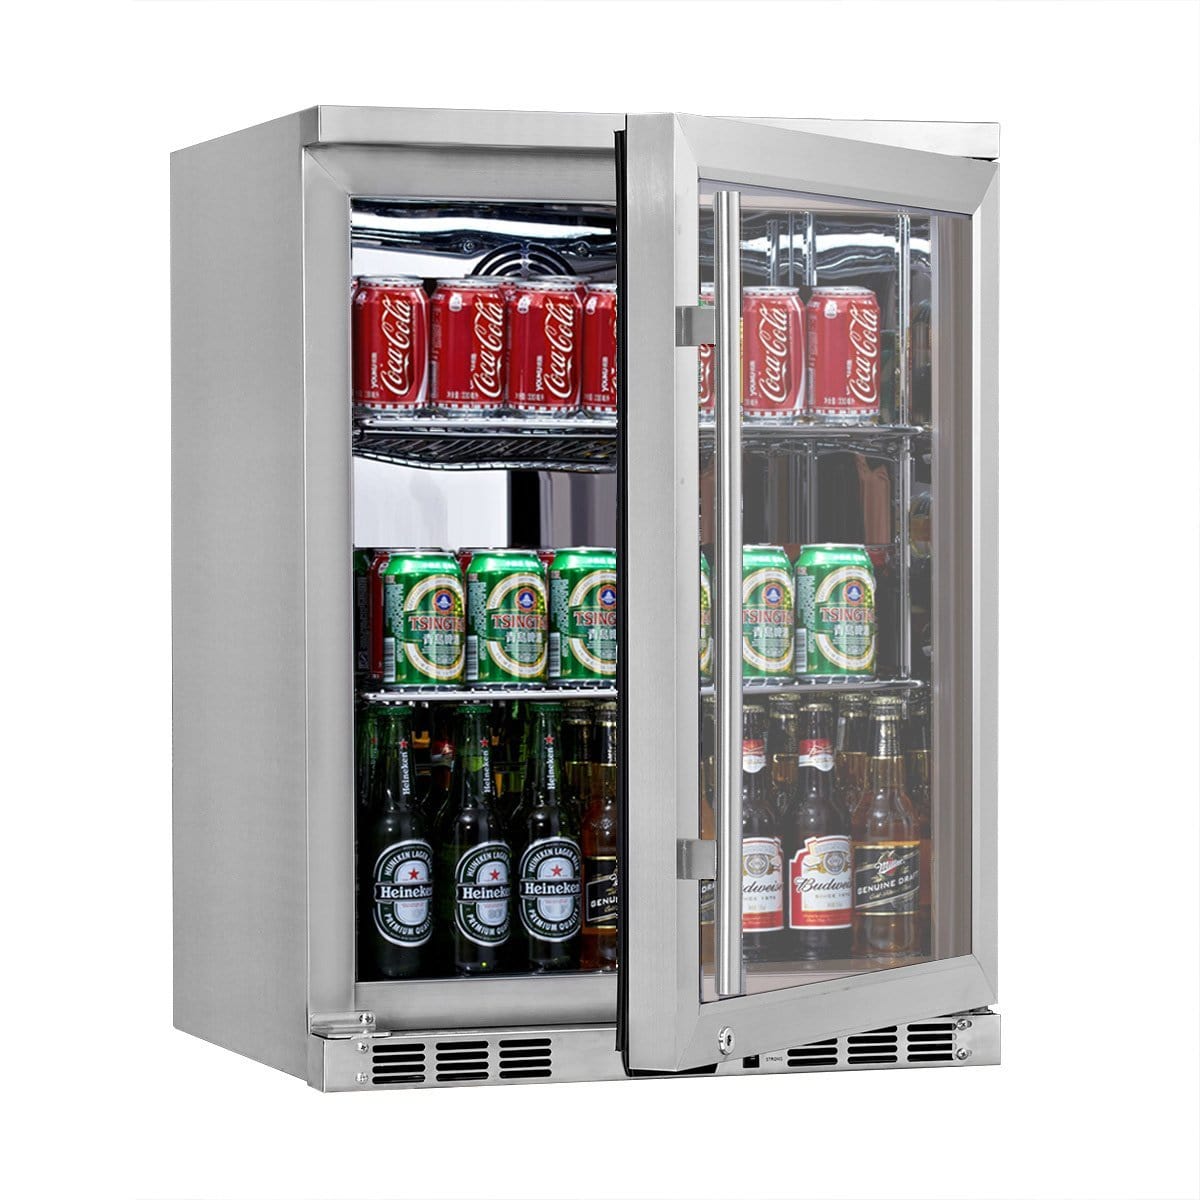 Kingsbottle KingsBottle KBU55M 24 Inch Under Counter Beer Cooler Drinks Stainless Steel Beverage Cooler Right KBU55M RHH